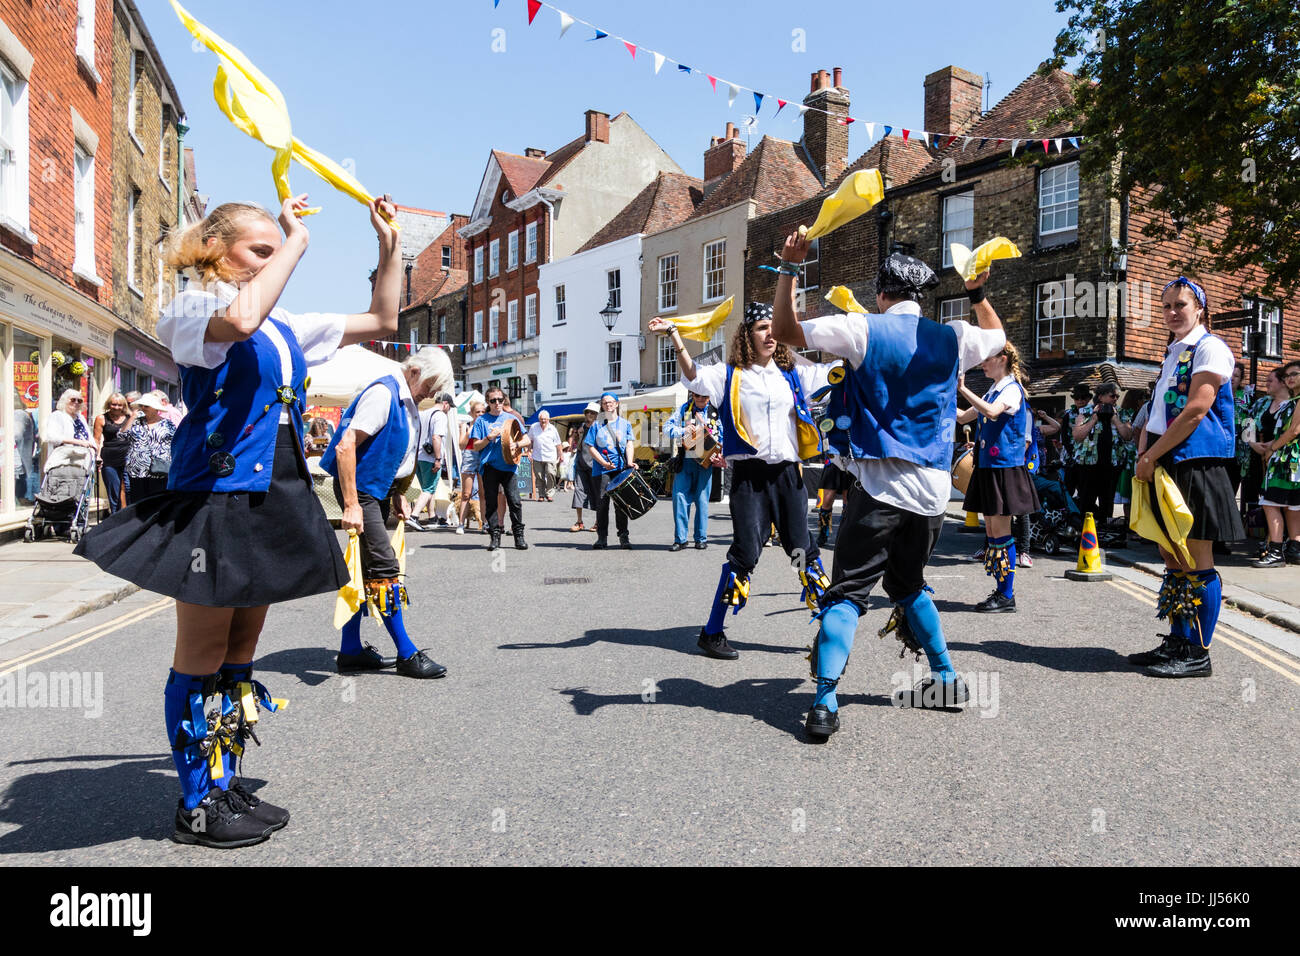 Danse folklorique traditionnel anglais, Royal Liberty côté Morris dancing  et jaune en tourbillonnant des mouchoirs, rue de la ville médiévale,  Sandwich. Événement folklorique Photo Stock - Alamy